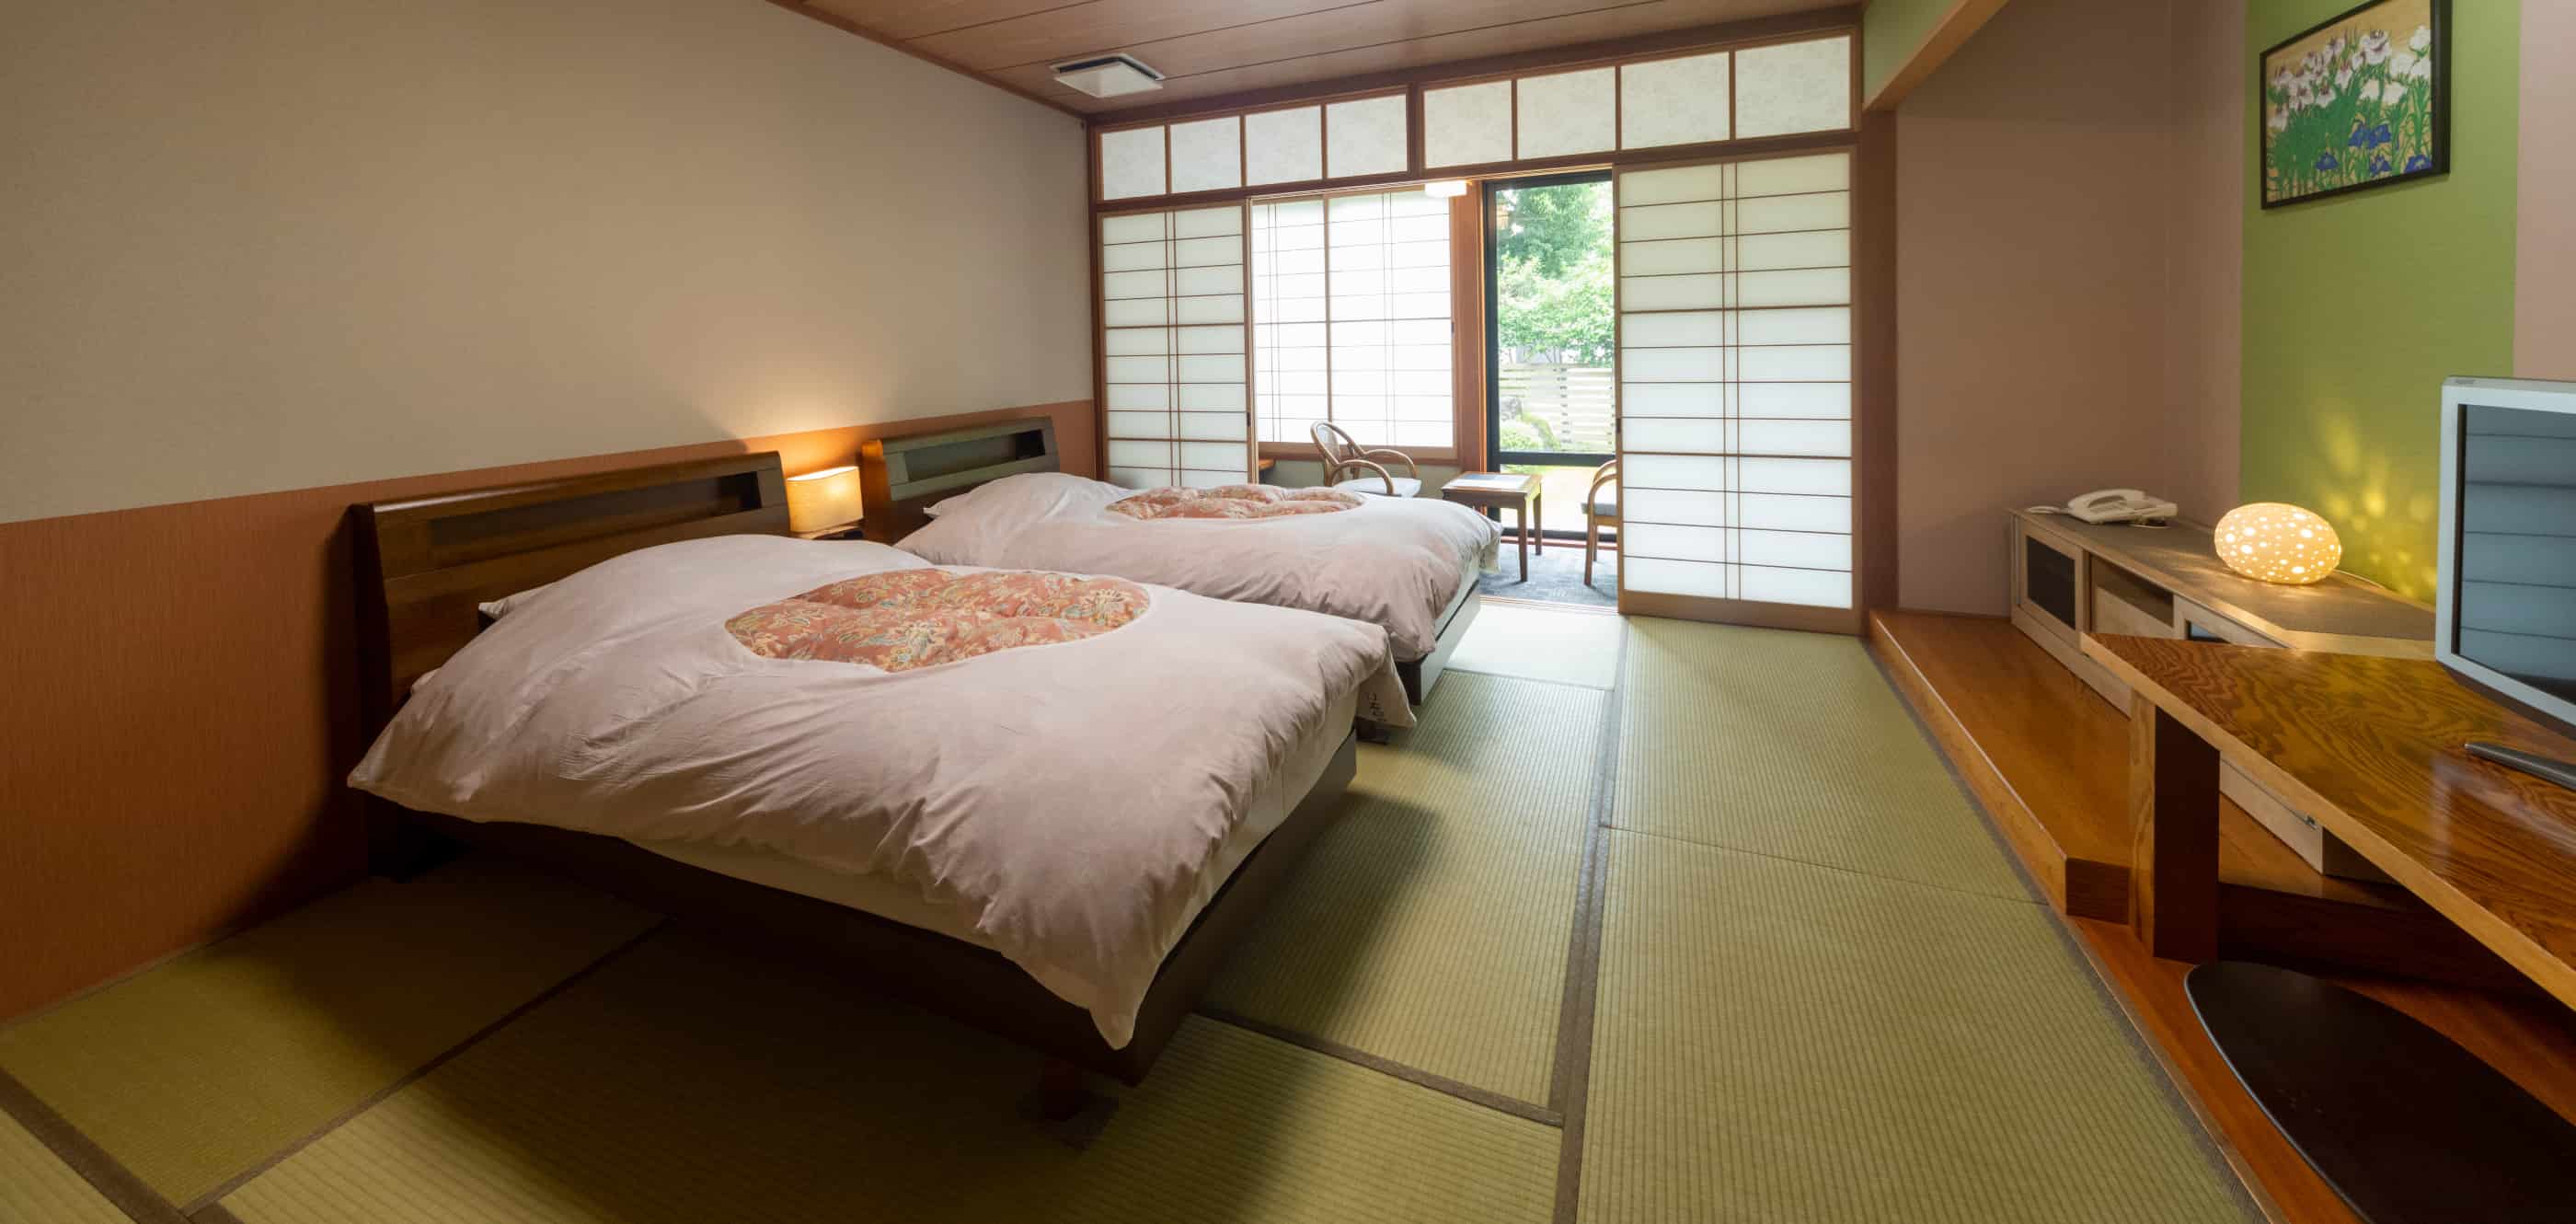 10-mat room type (bed type)